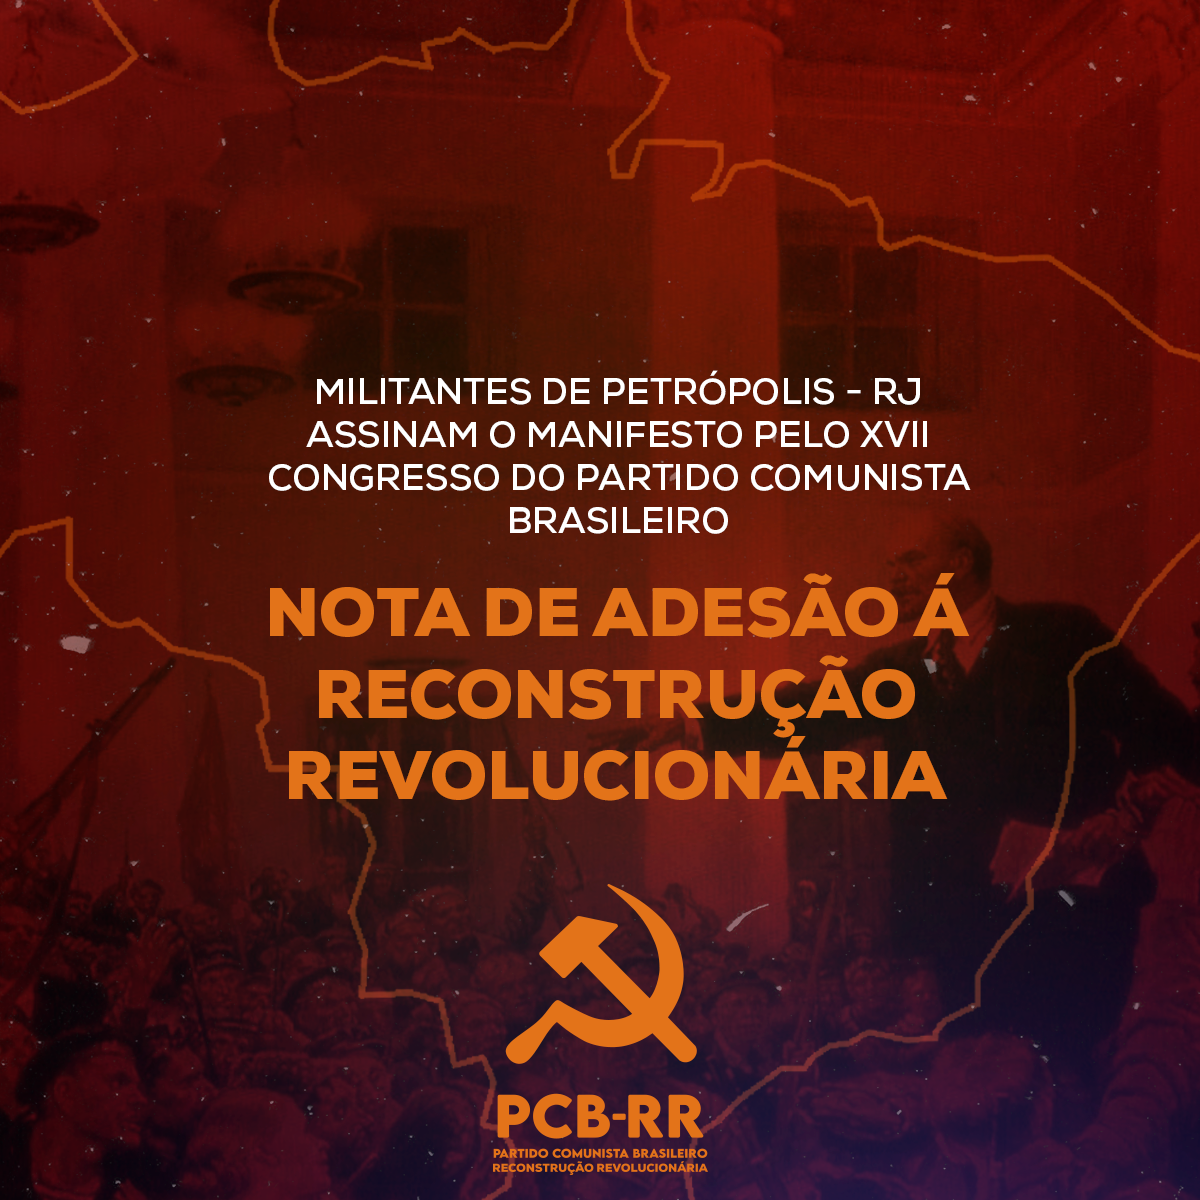 Petrópolis: militantes assinam o manifesto pelo XVII Congresso do Partido Comunista Brasileiro